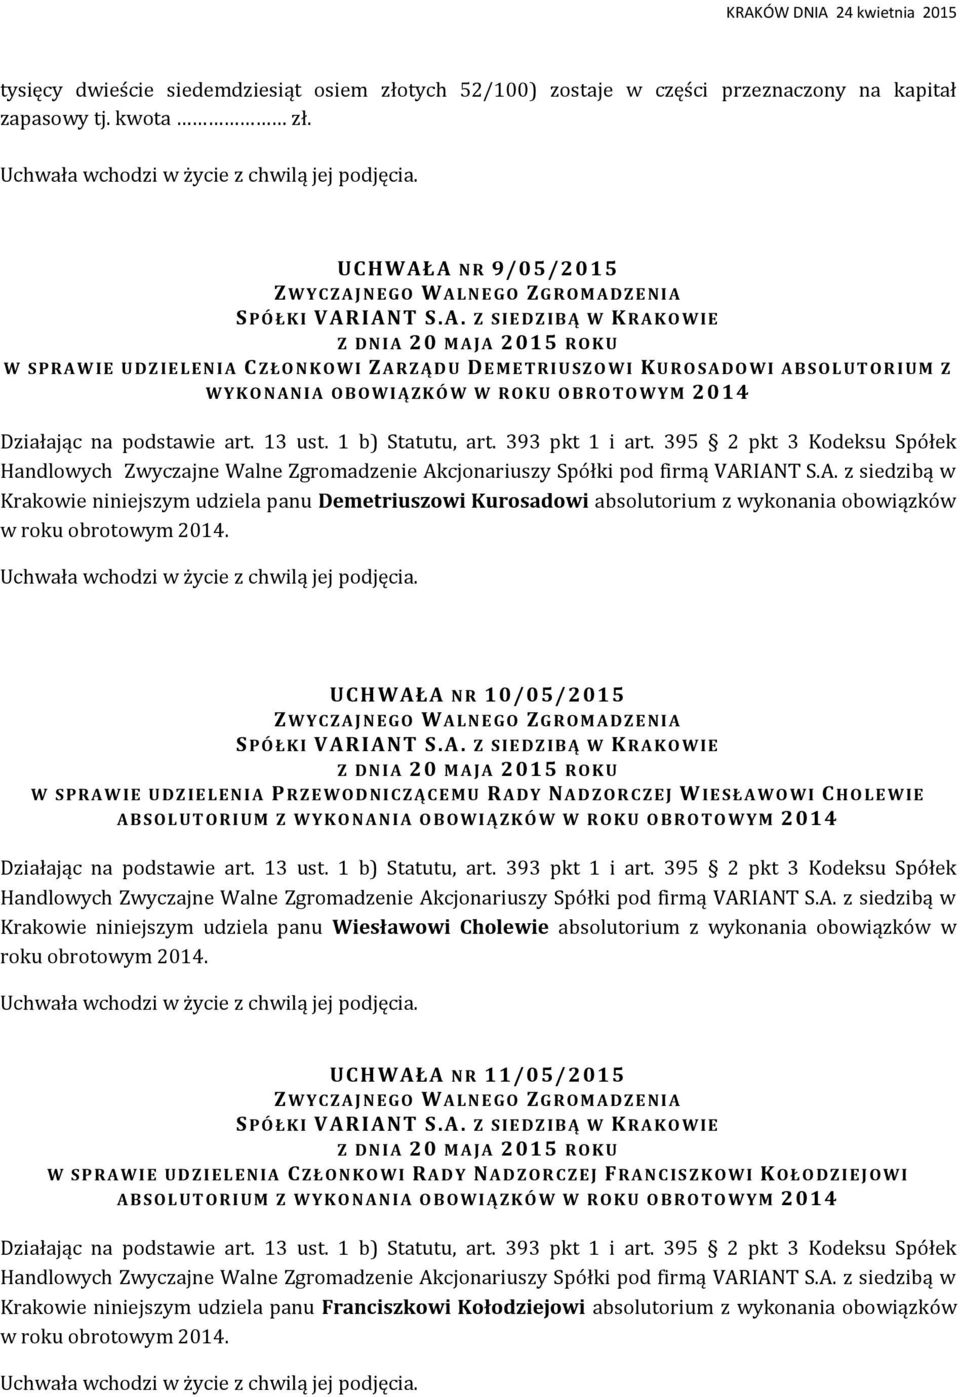 O B R O T O W Y M 2014 Krakowie niniejszym udziela panu Demetriuszowi Kurosadowi absolutorium z wykonania obowiązków w roku obrotowym 2014.